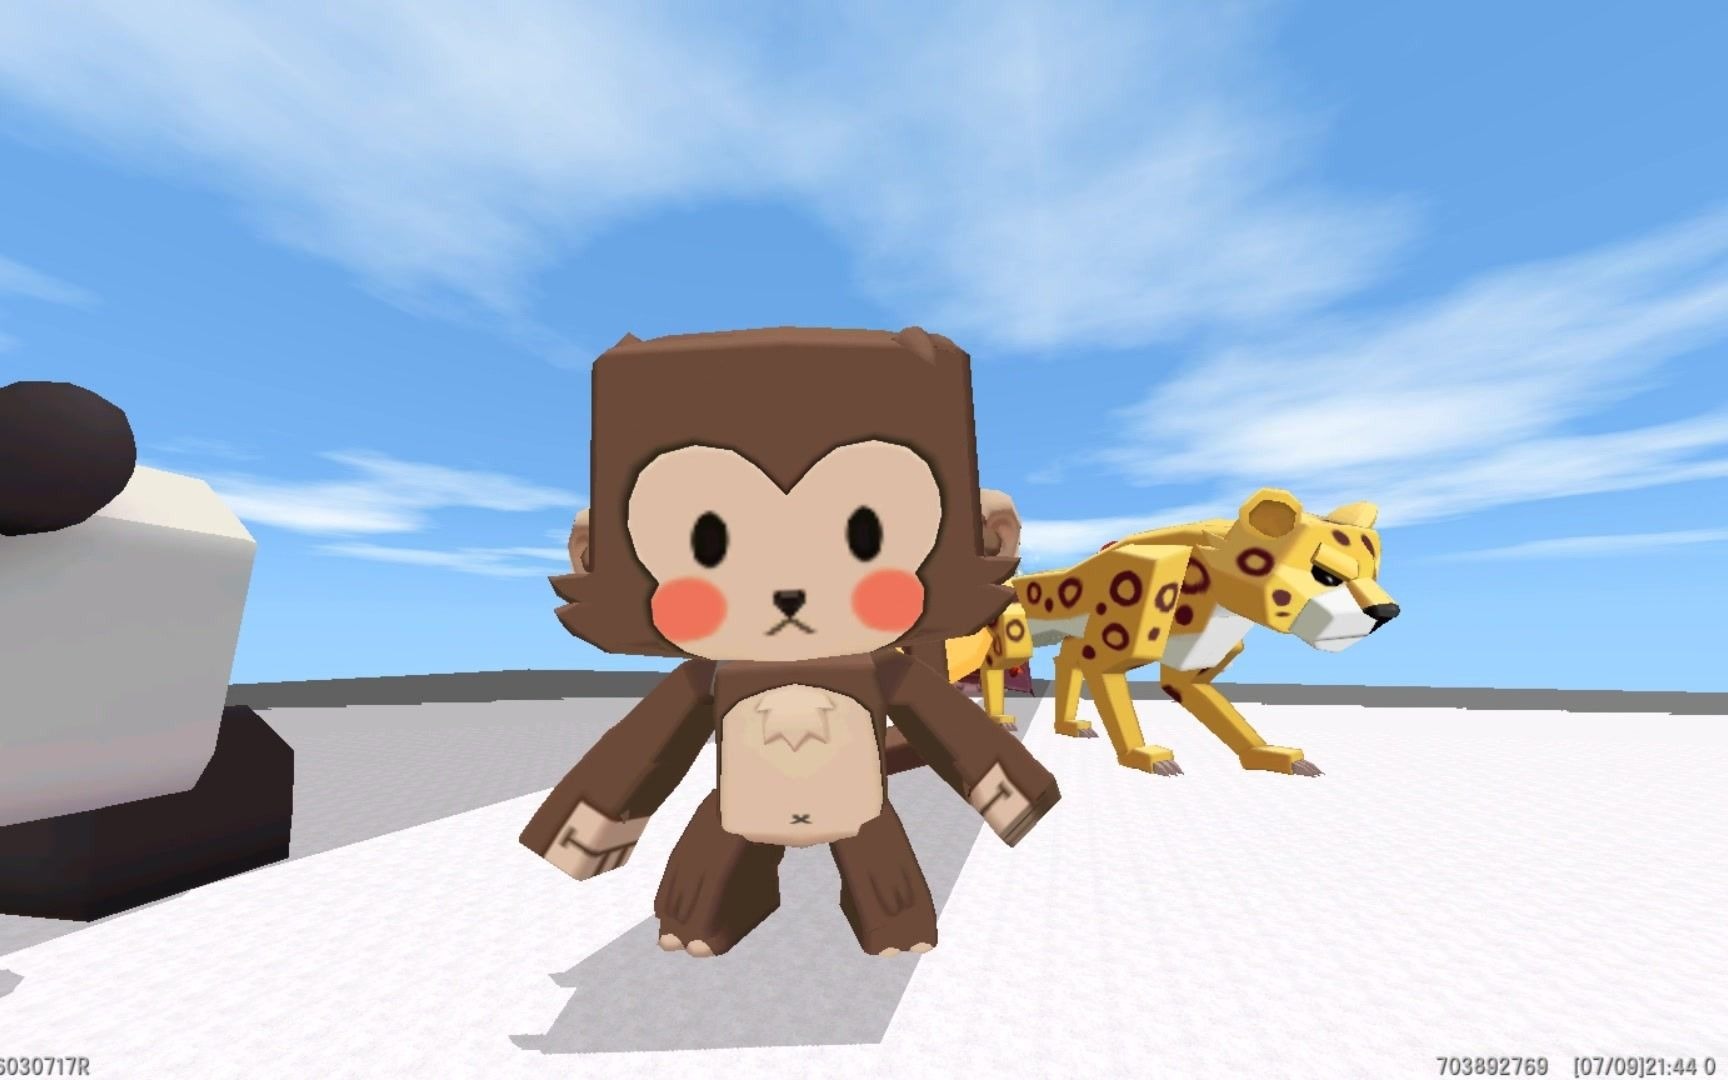 迷你世界:动物可以变大,这个猴子变成泰坦了